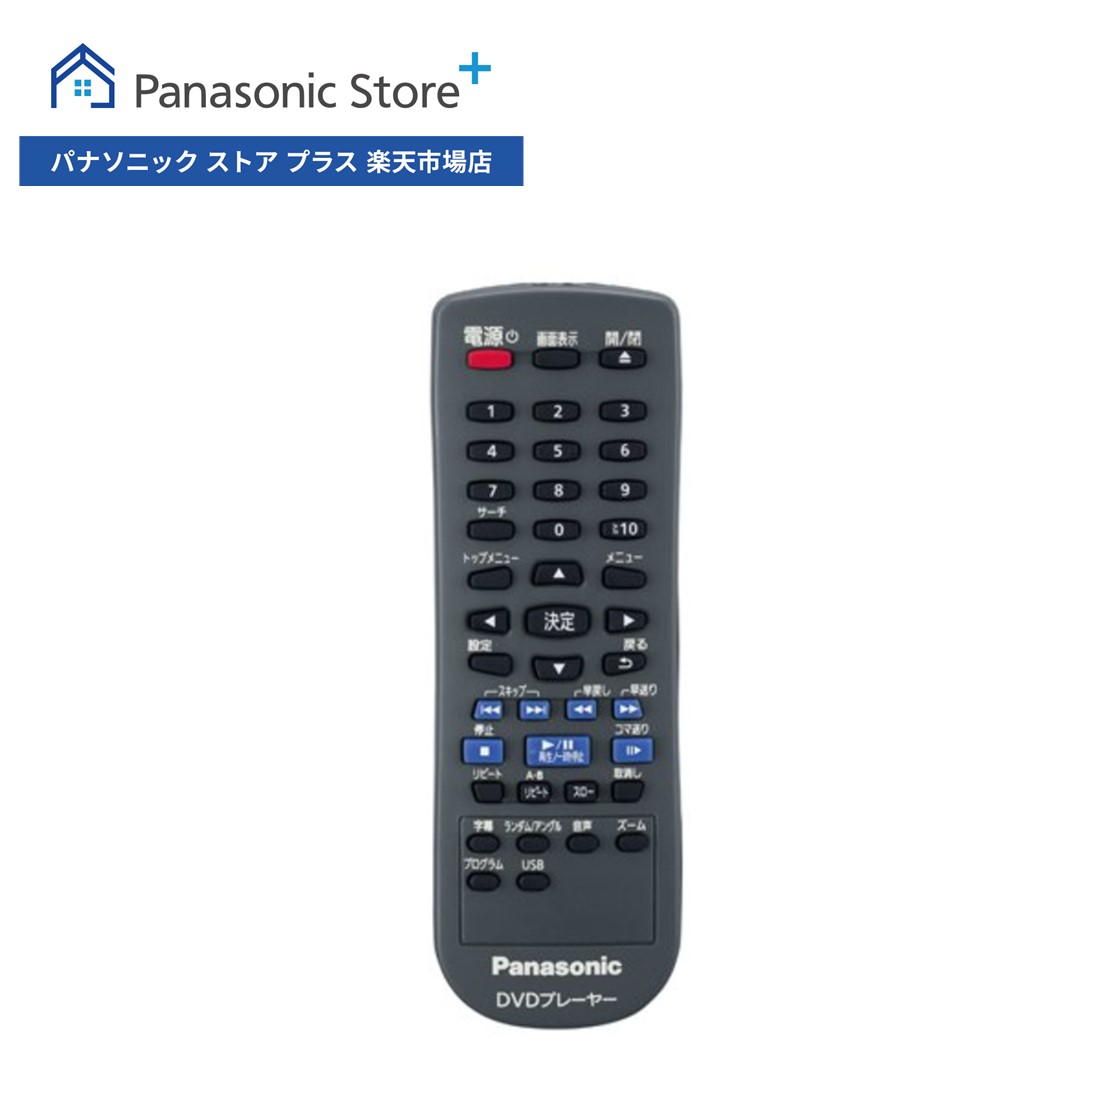  パナソニック リモコン N2QAYA000148 DVD/CDプレーヤー 消耗品